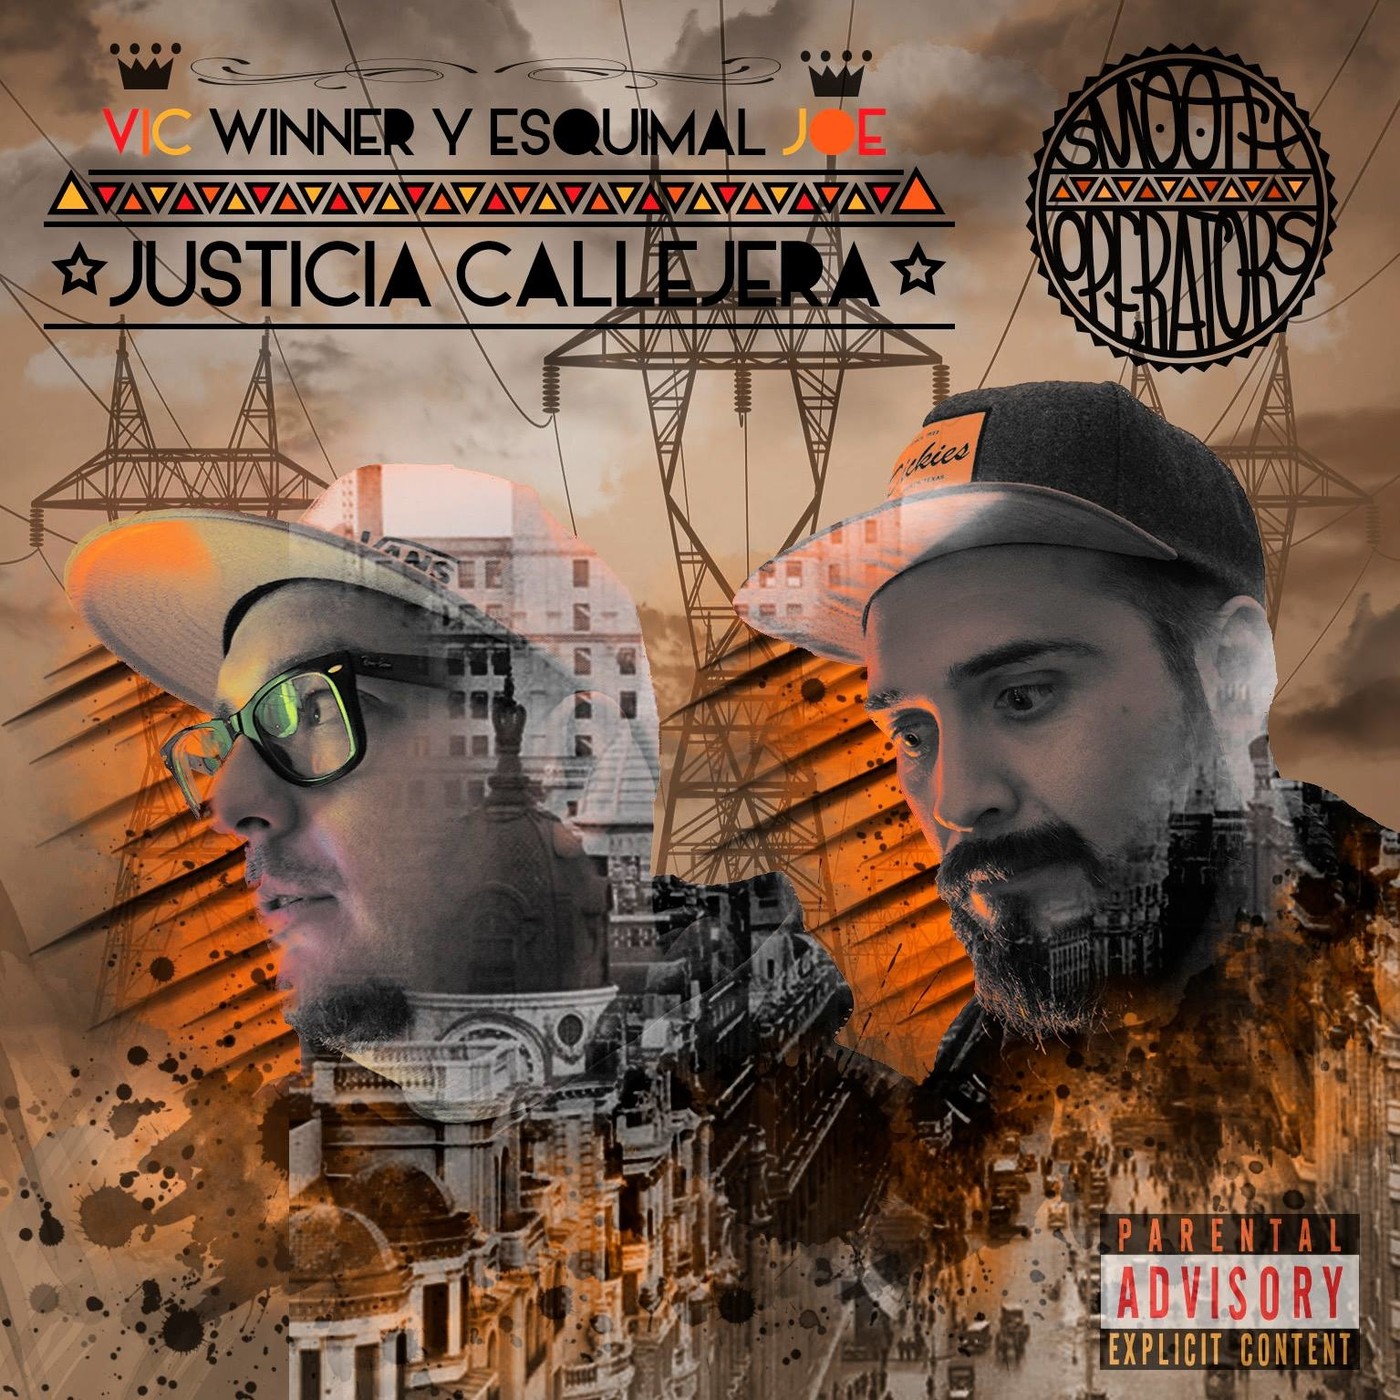 SMOOTH OPERATORS - JUSTICIA CALLEJERA (2018)